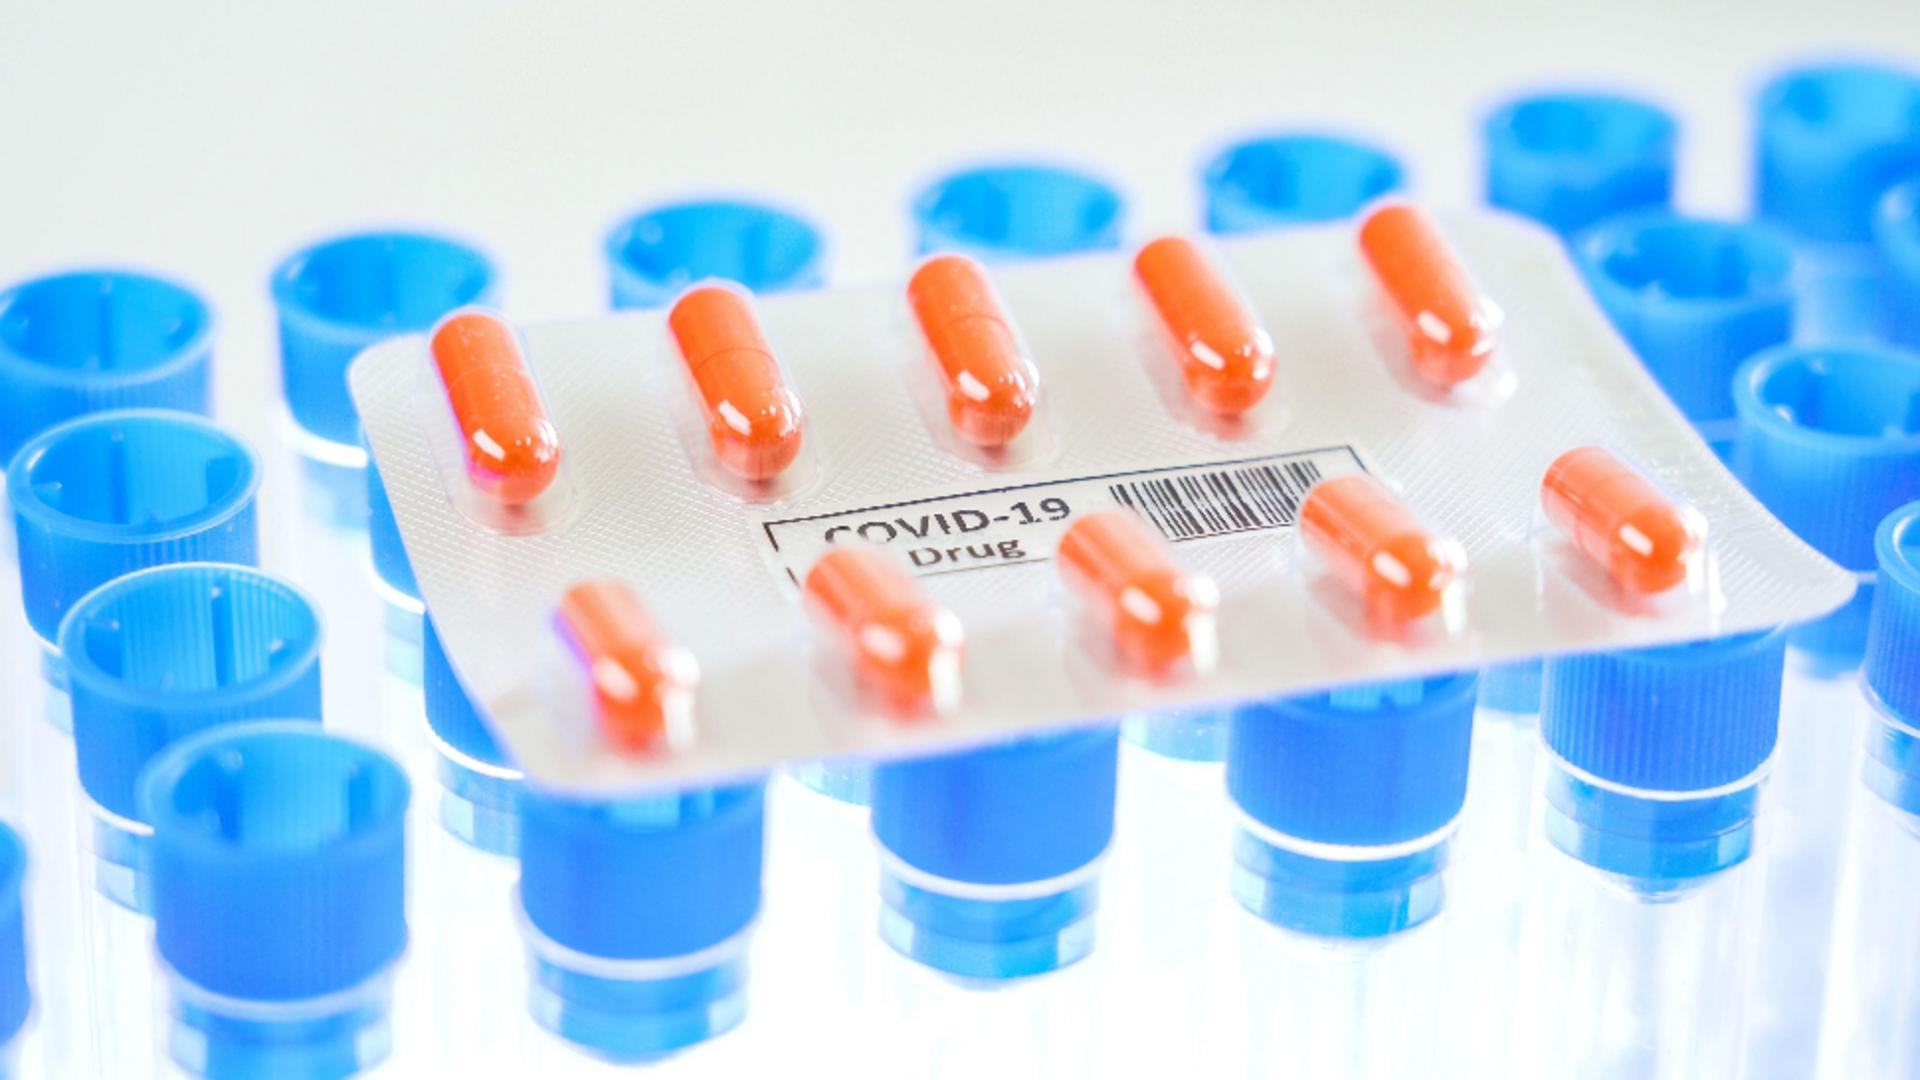 Medicii solicită distribuirea urgentă în spitale și farmacii a medicamentelor anti-COVID / Sursa foto: Profi Media